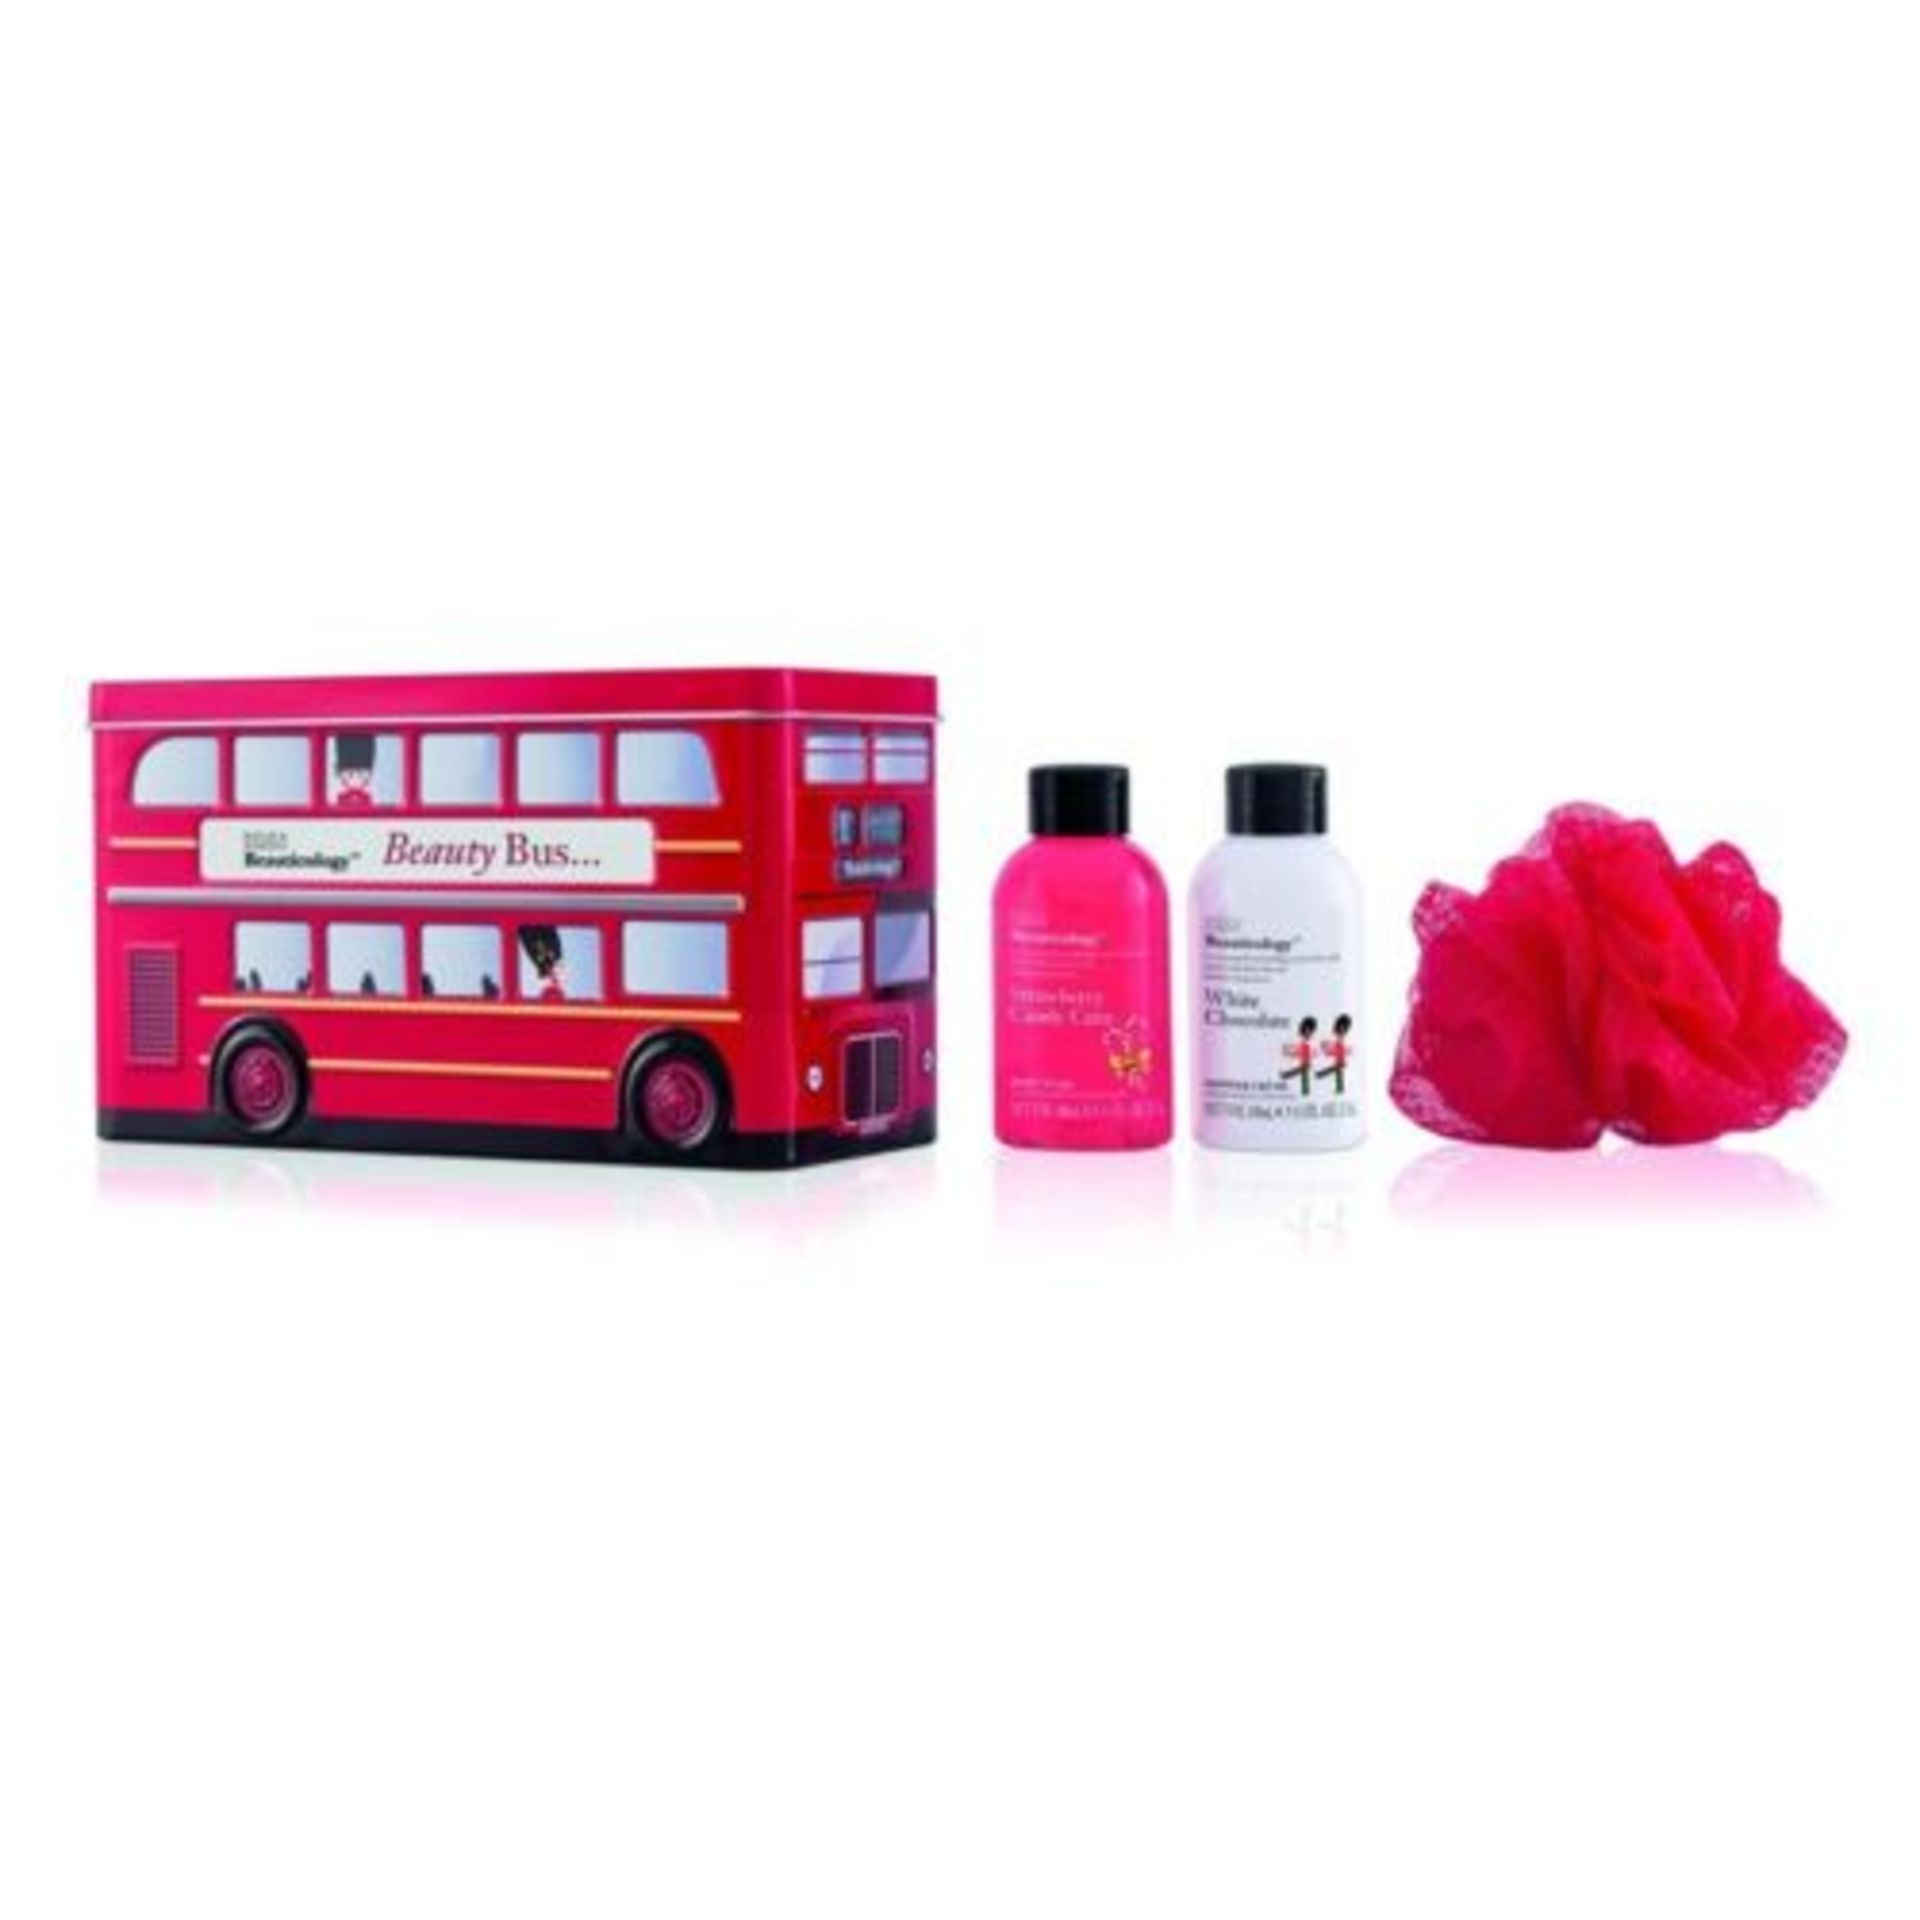 V Brand New Baylis & Harding Beauticology Beauty Bus Tin Containing 1 x Strawberry Candy Cane Body